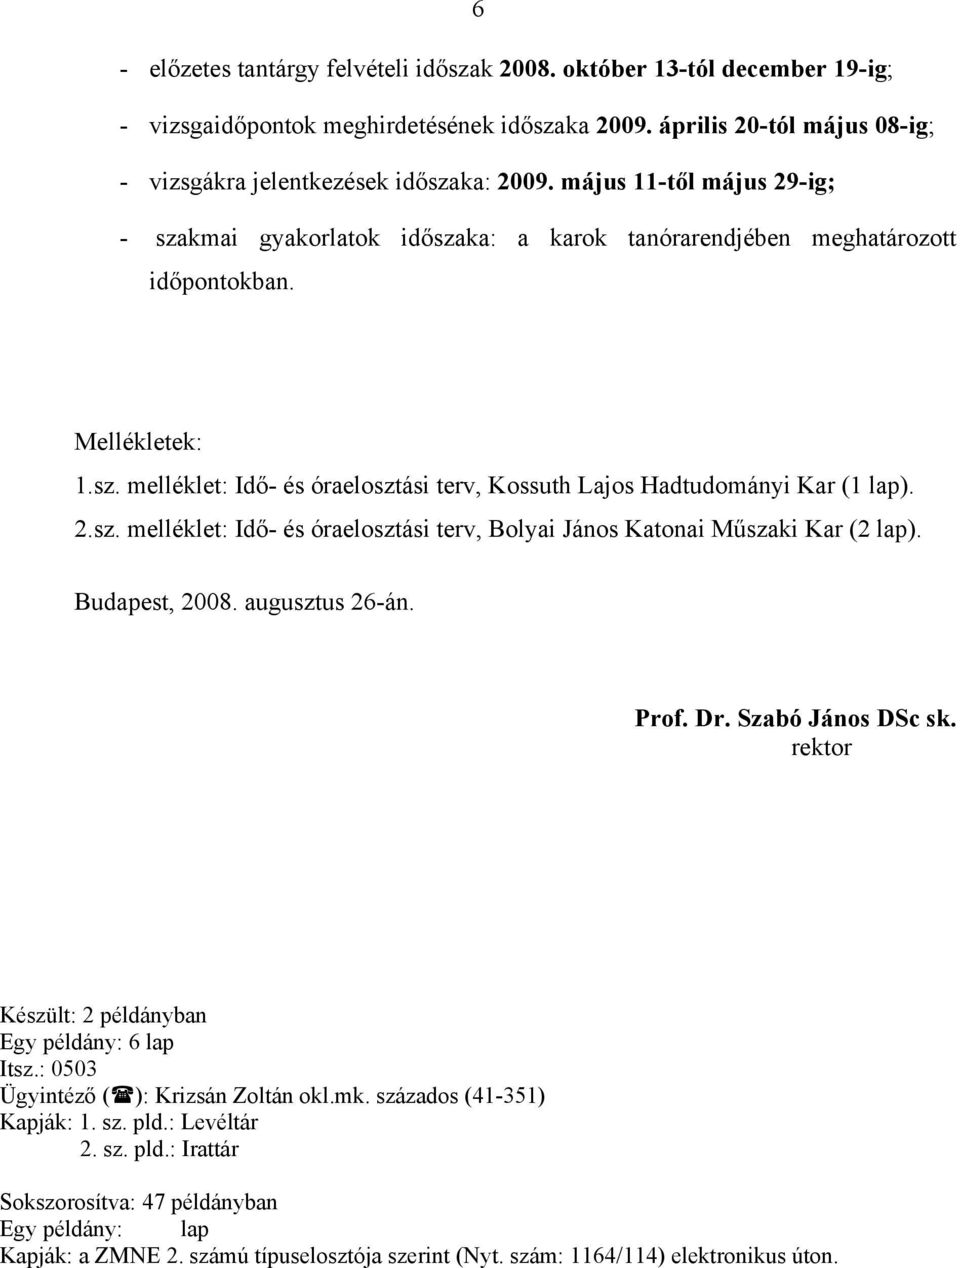 2.sz. melléklet: Idő- és óraelosztási terv, Bolyai János Katonai Műszaki Kar (2 lap). Budapest, 2008. augusztus 26-án. Prof. Dr. Szabó János DSc sk.